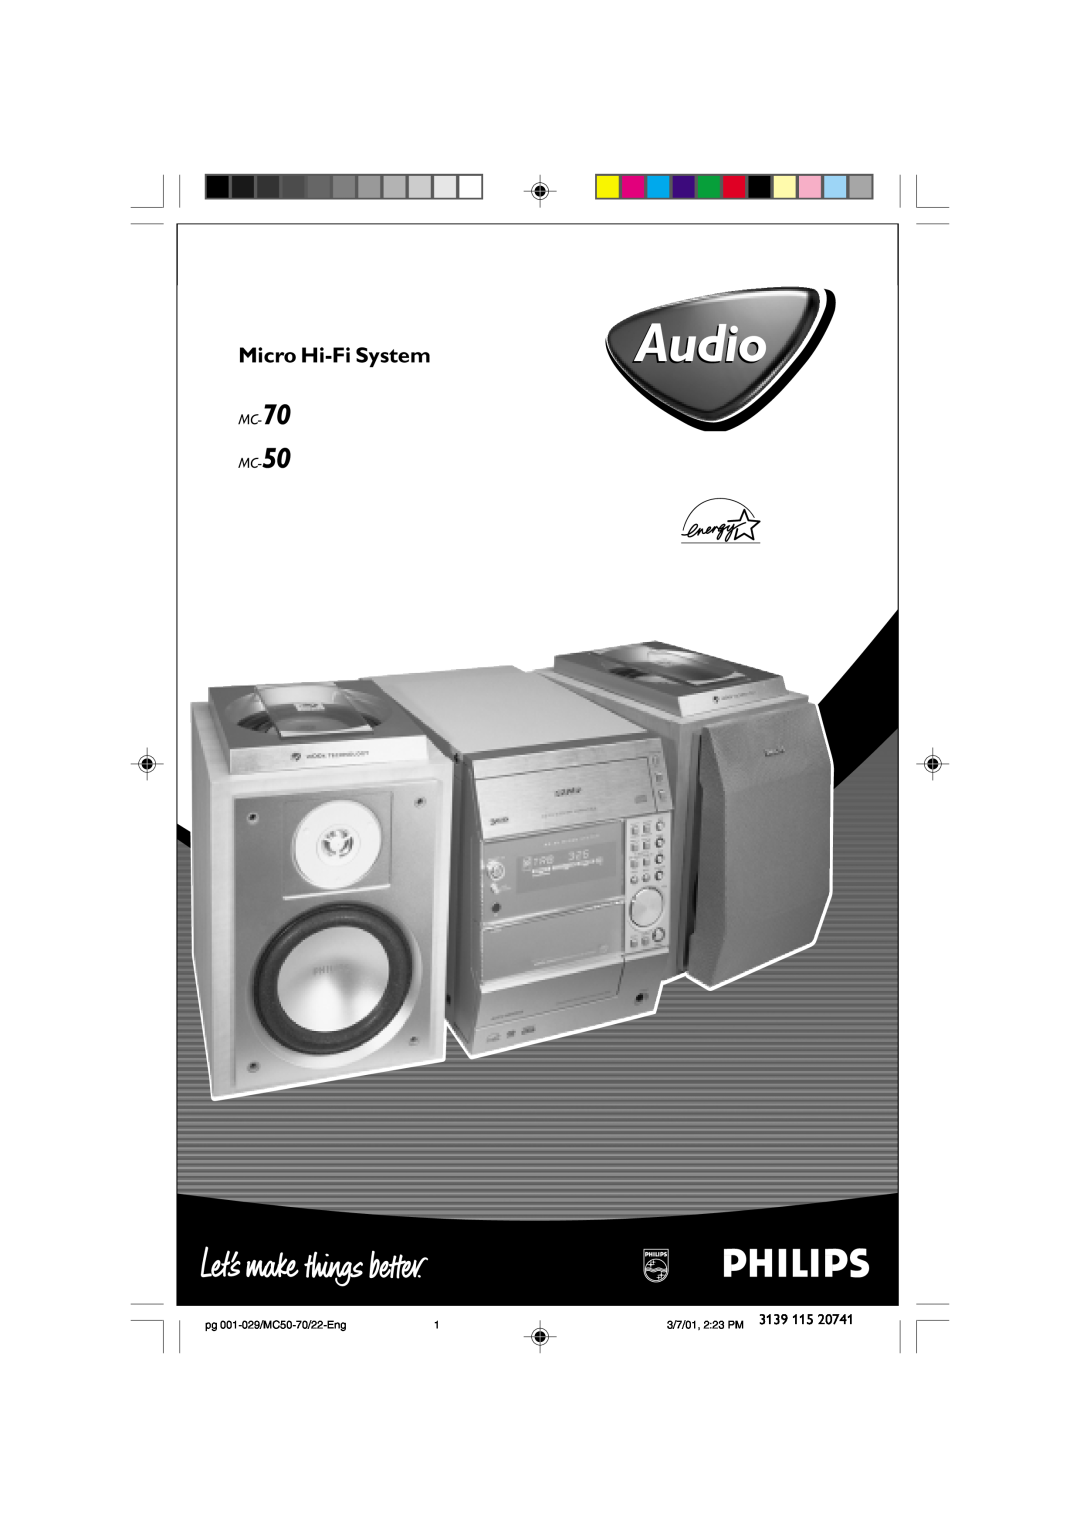 Philips manual Micro Hi-FiSystem, MC-70 MC-50, Audio, pg 001-029/MC50-70/22-Eng, 3/7/01, 2 23 PM 